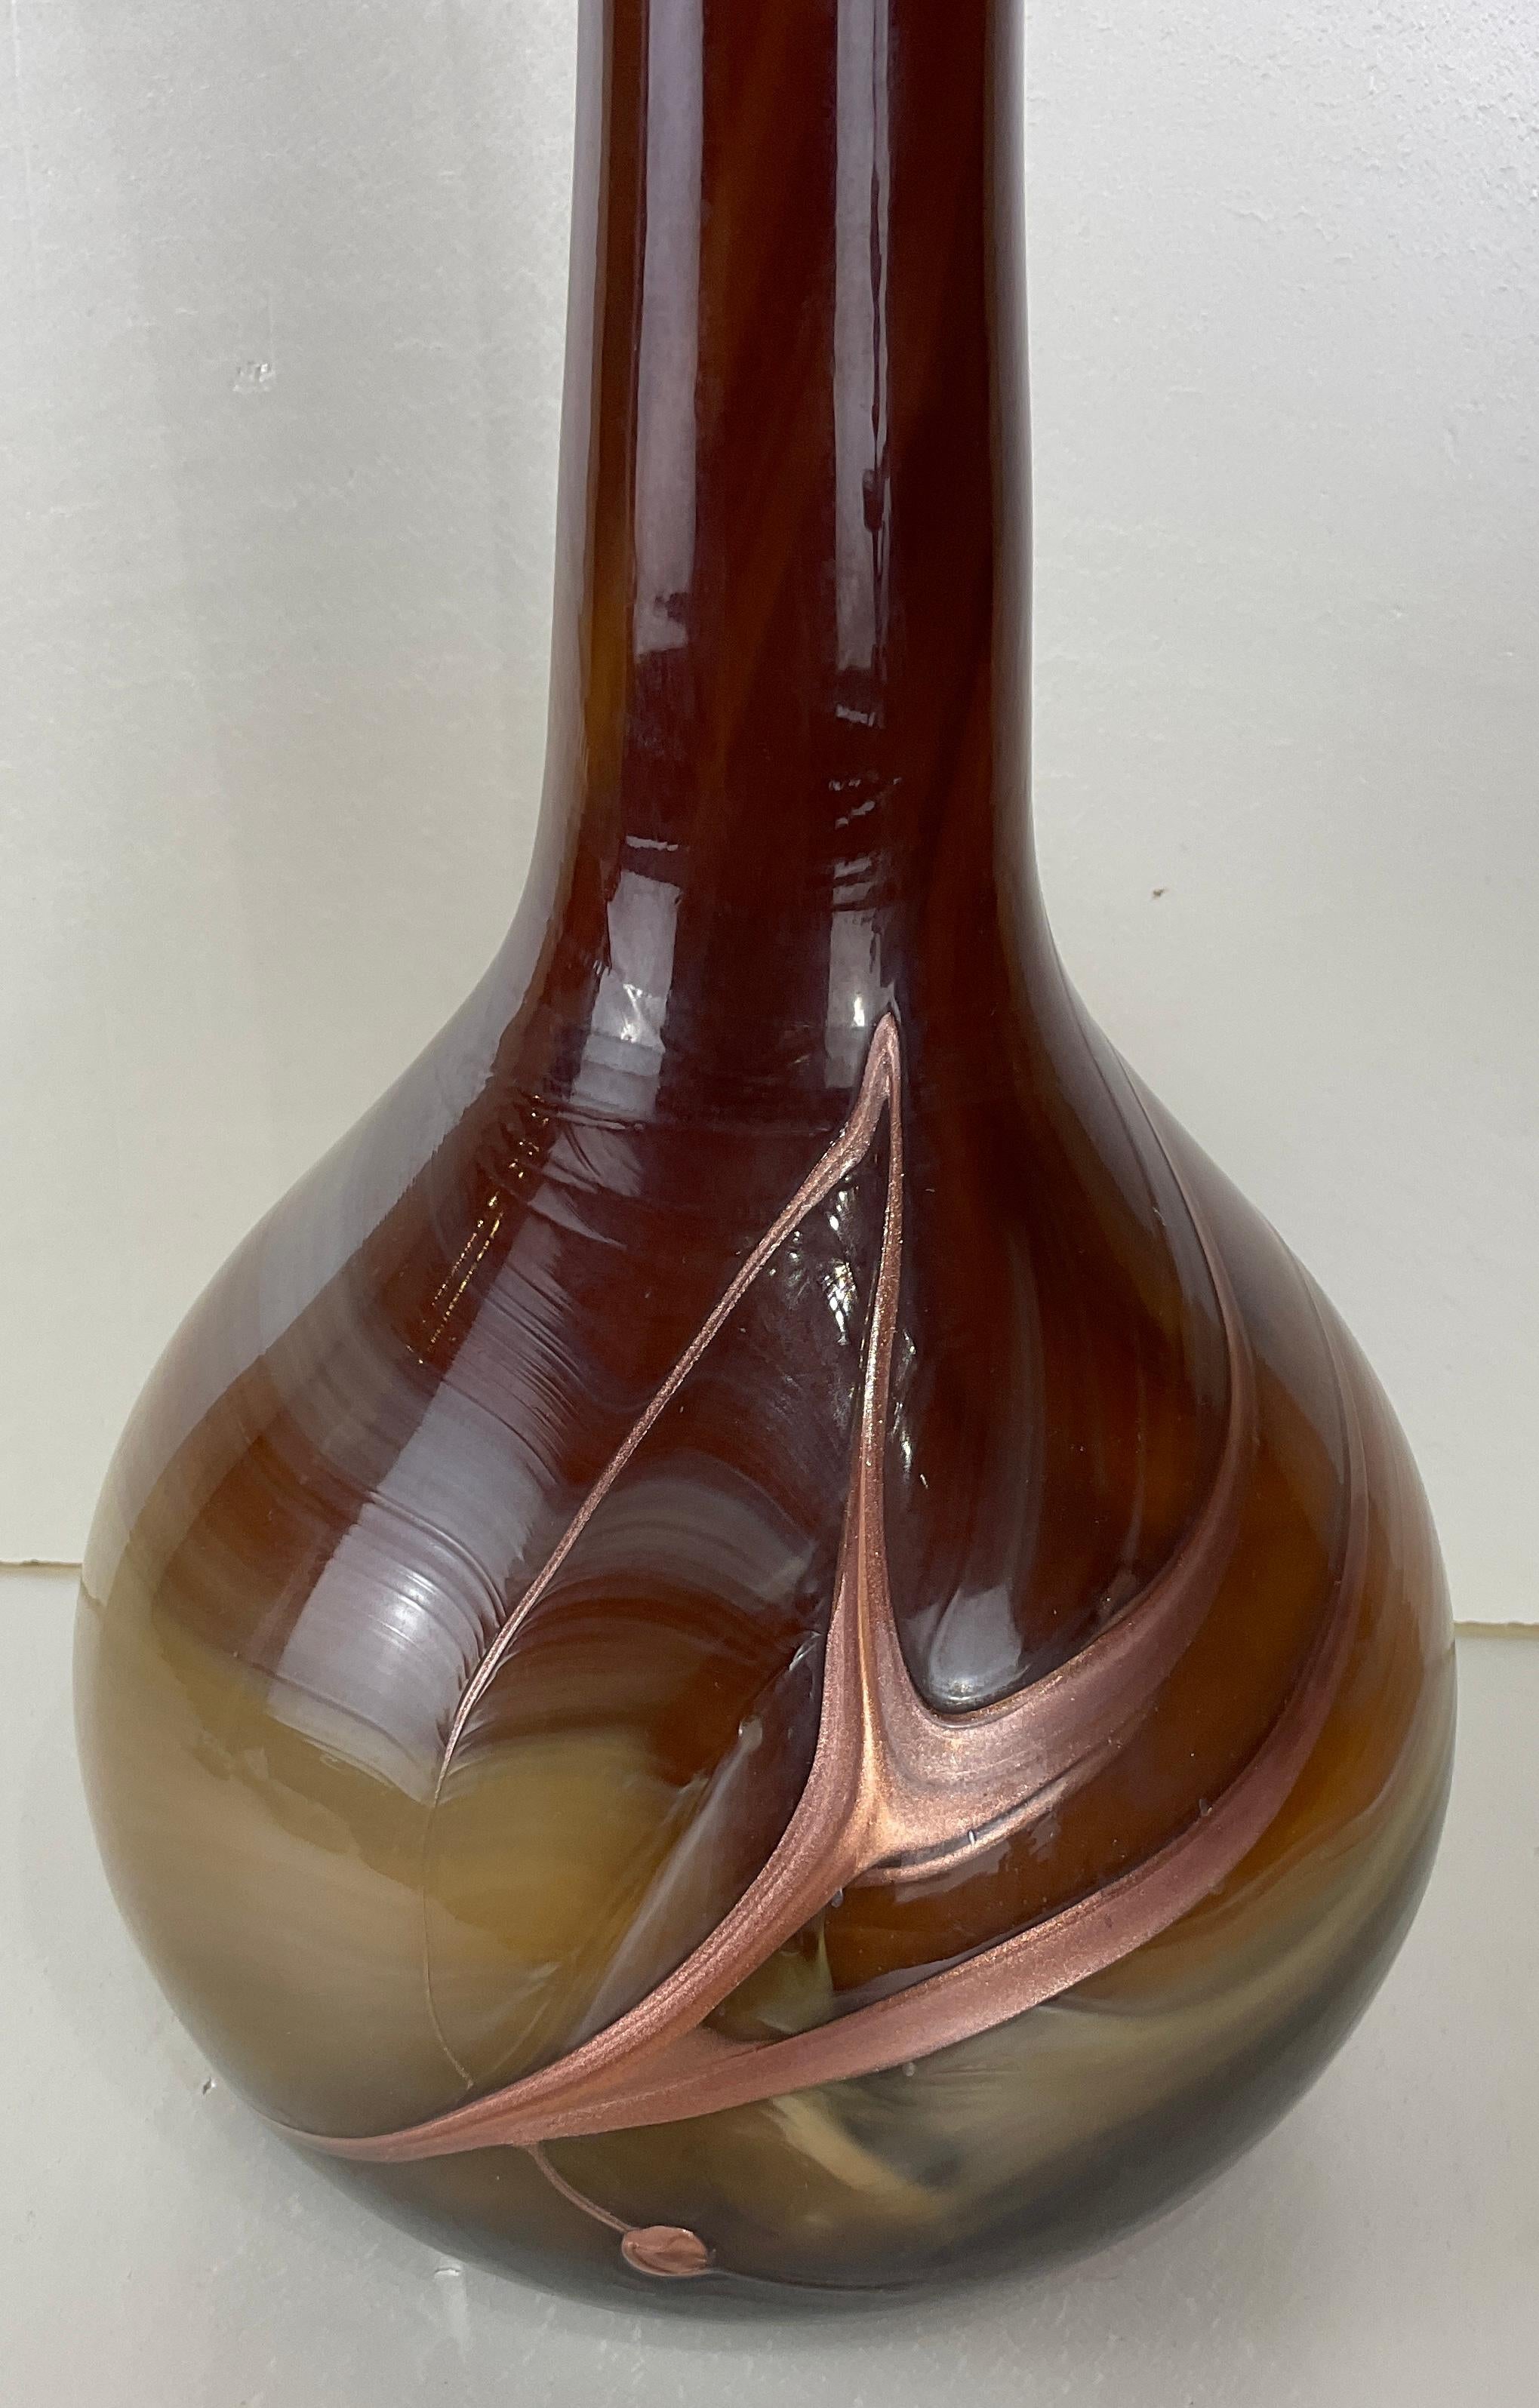 Unique et sophistiqué, ce vase est fabriqué en pâte de verre soufflée à la bouche et décoré à la main selon une technique inventée par les Romains, réintroduite à l'époque de l'Art nouveau et poursuivie tout au long des années 1960. 

Cette création